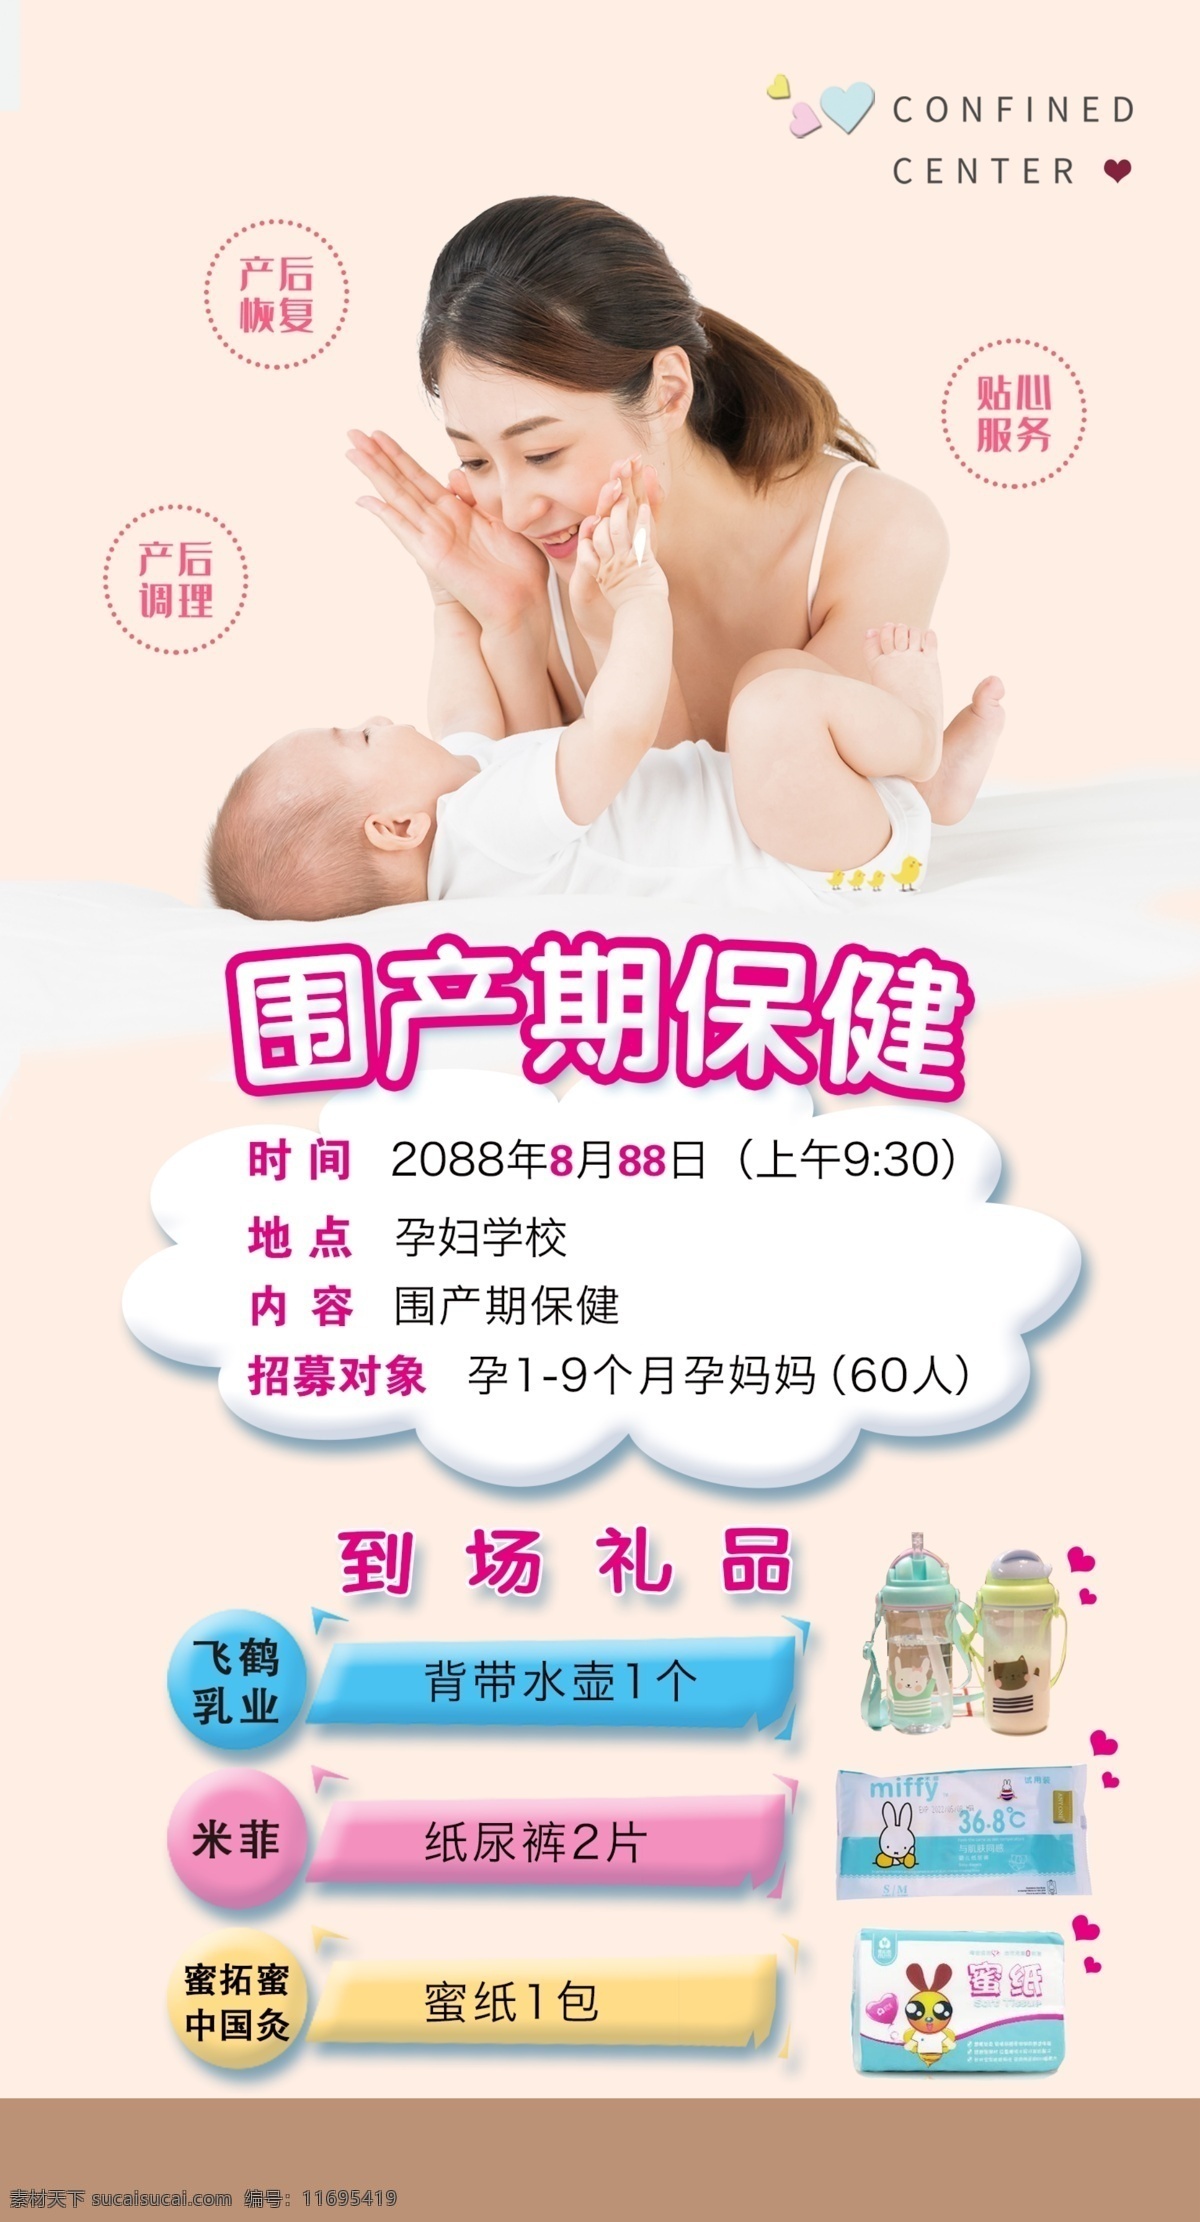 孕妇学校宣传 孕妇 孕妇学校 宣传图片 宝妈 宝宝图片 分层